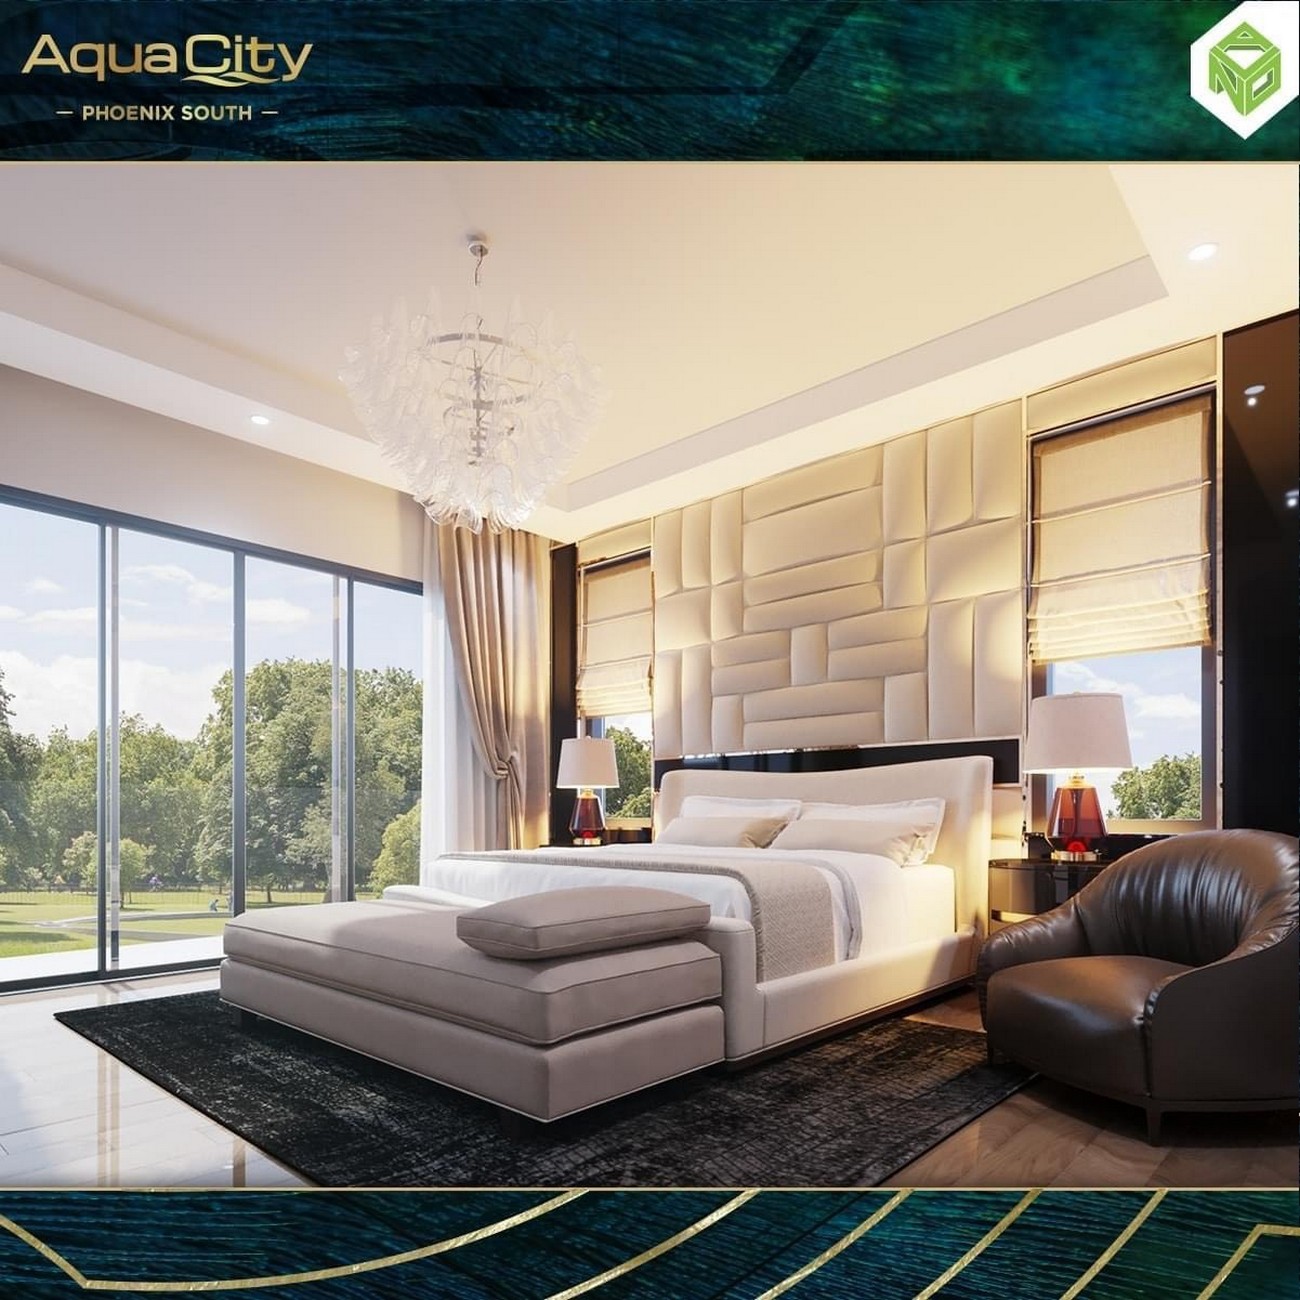 Phòng ngủ nhà mẫu dự án nhà phố Đảo Phượng Hoàng Aqua City (Phoenix South) Đồng Nai chủ đầu tư Novaland